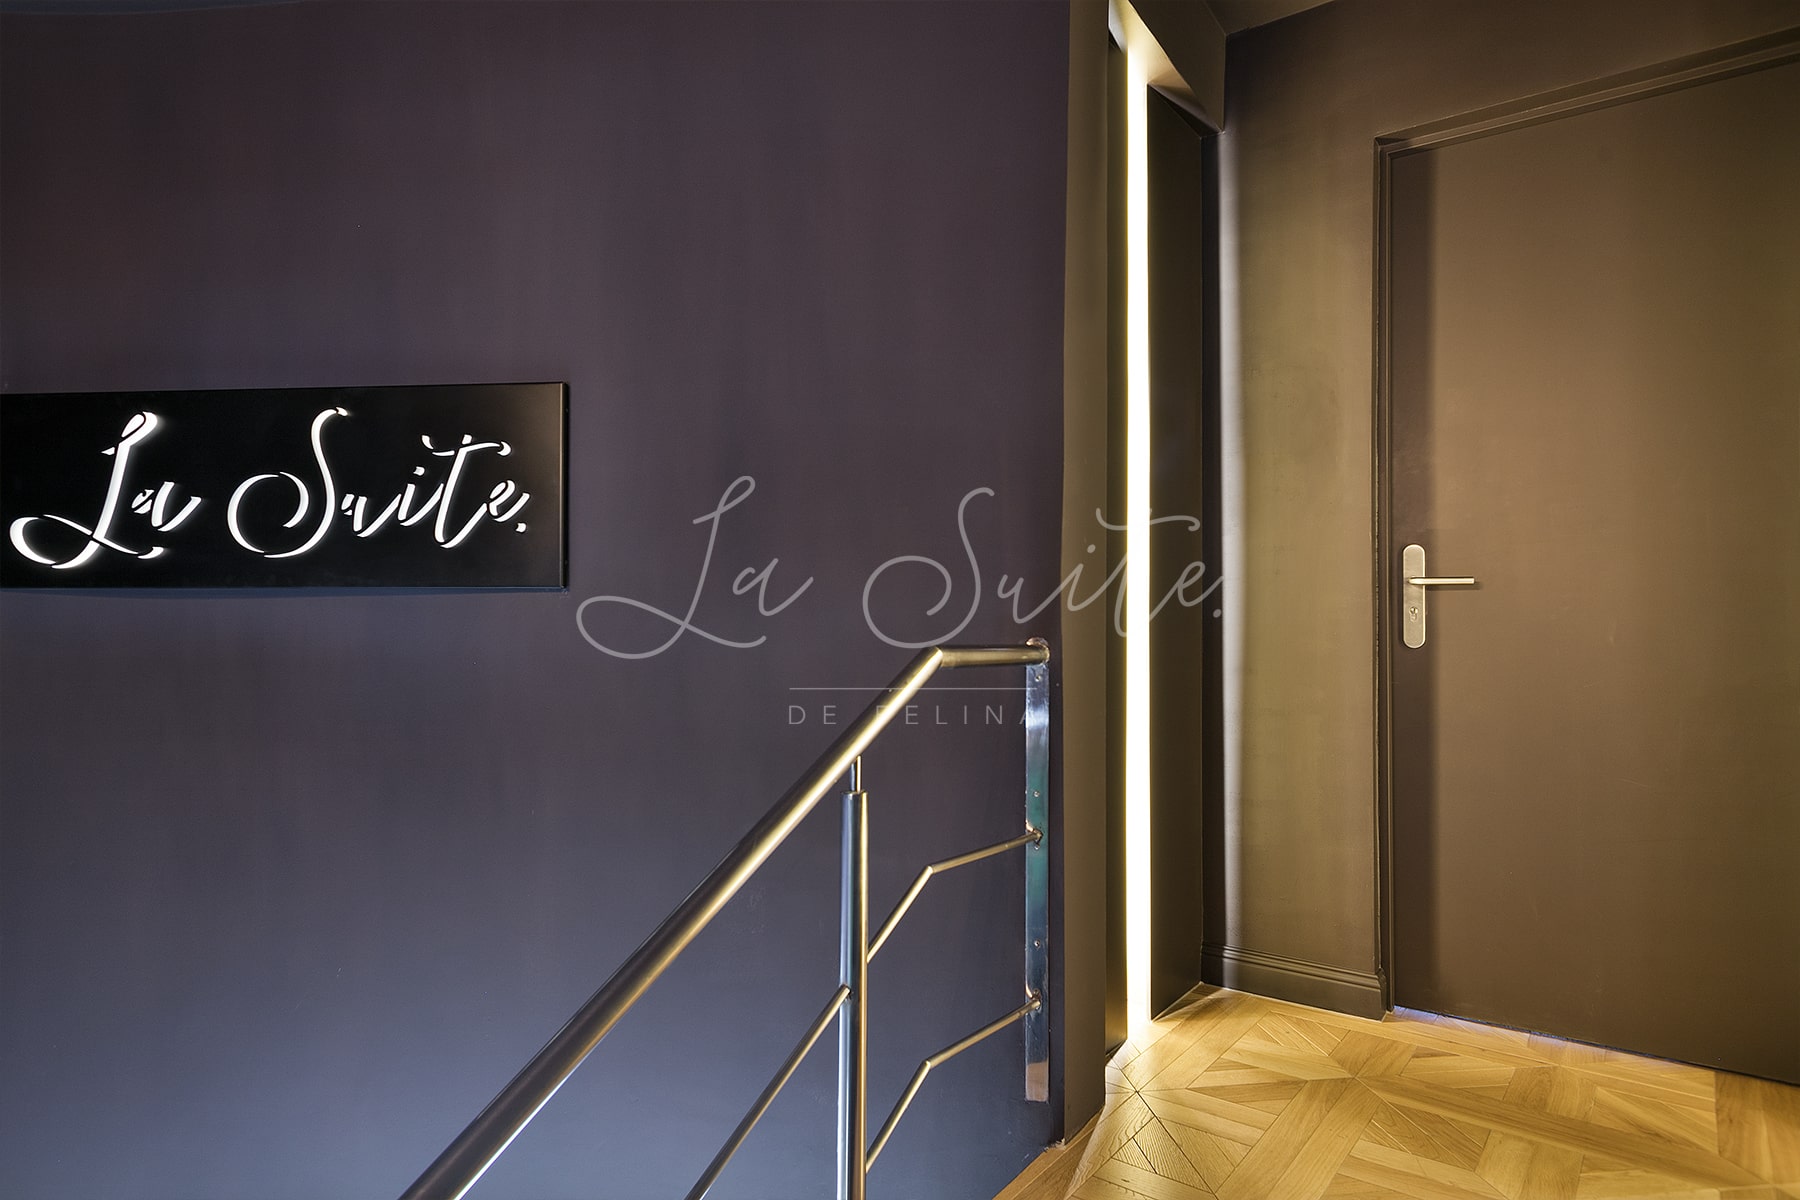 Entrada principal de la casa de escorts elegante La Suite, Barcelona